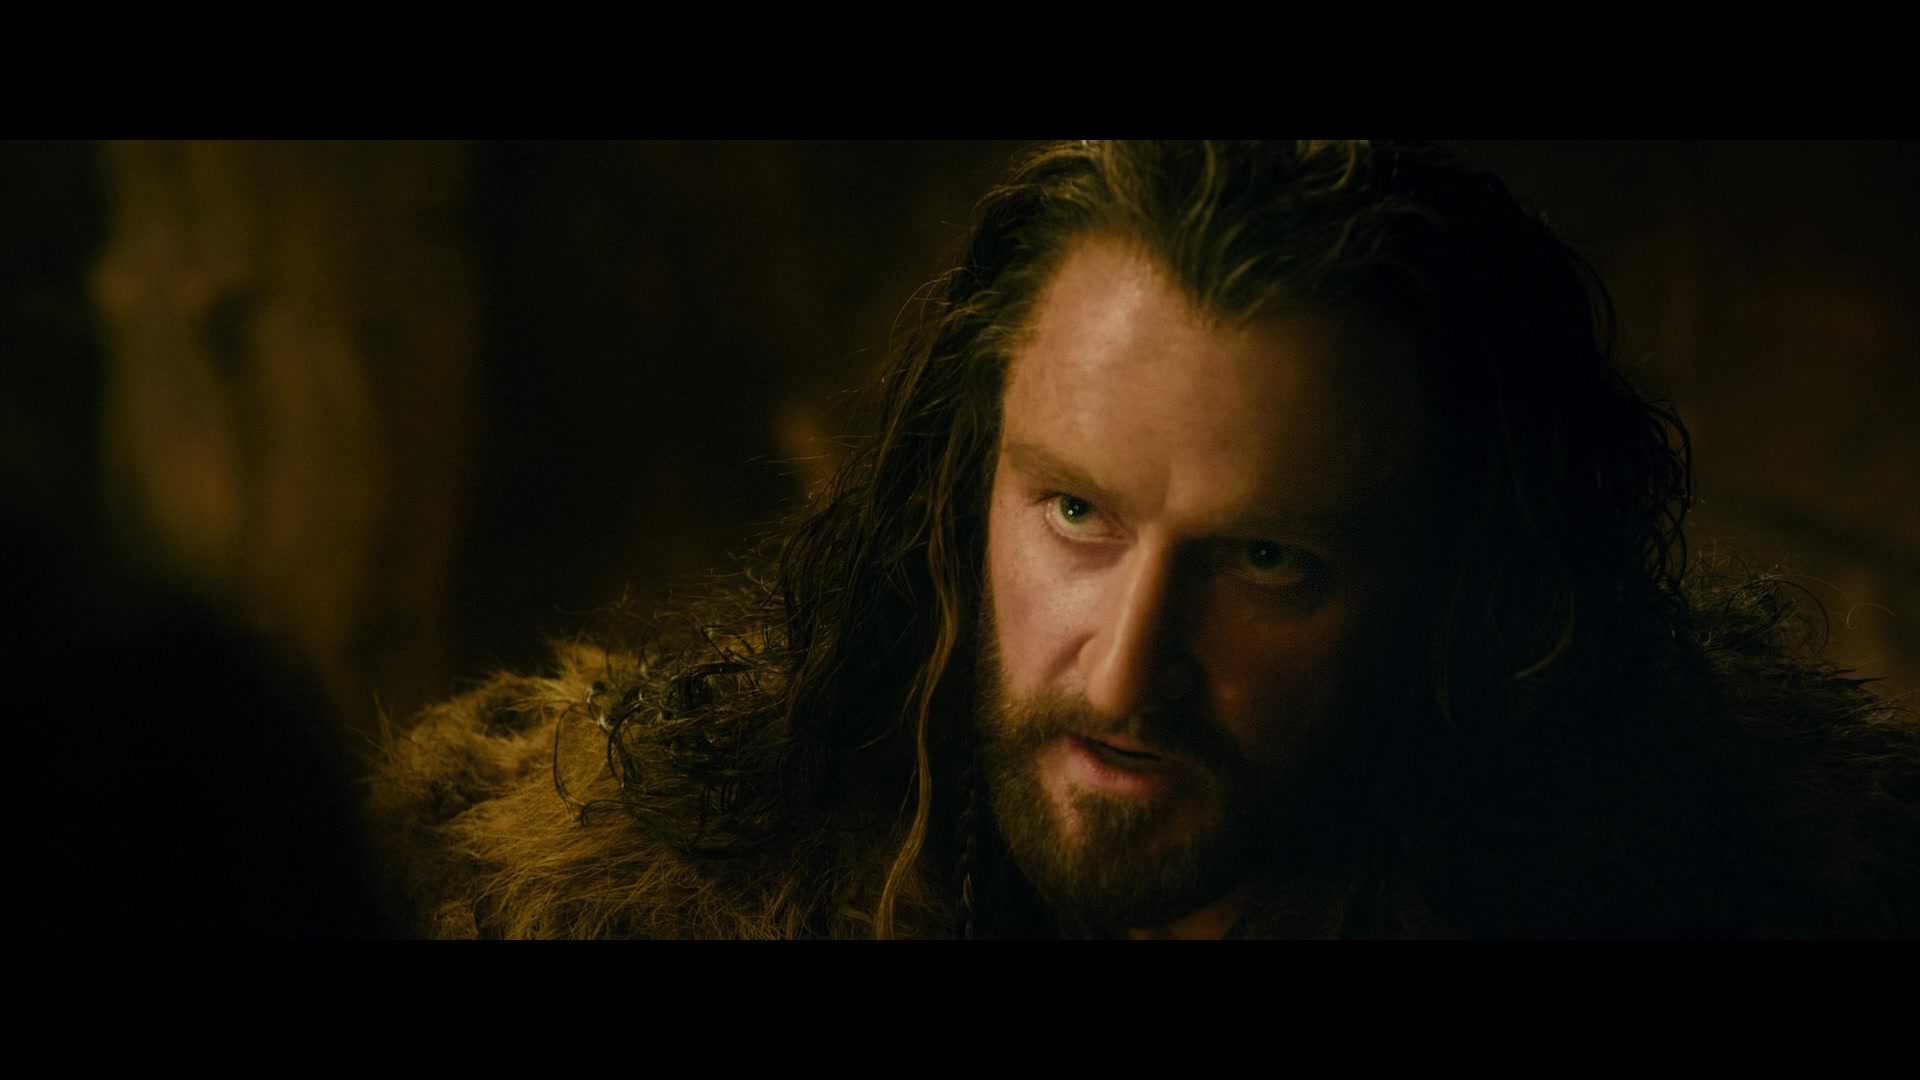 The Hobbit: The Desolation of Smaug Screencap | Fancaps